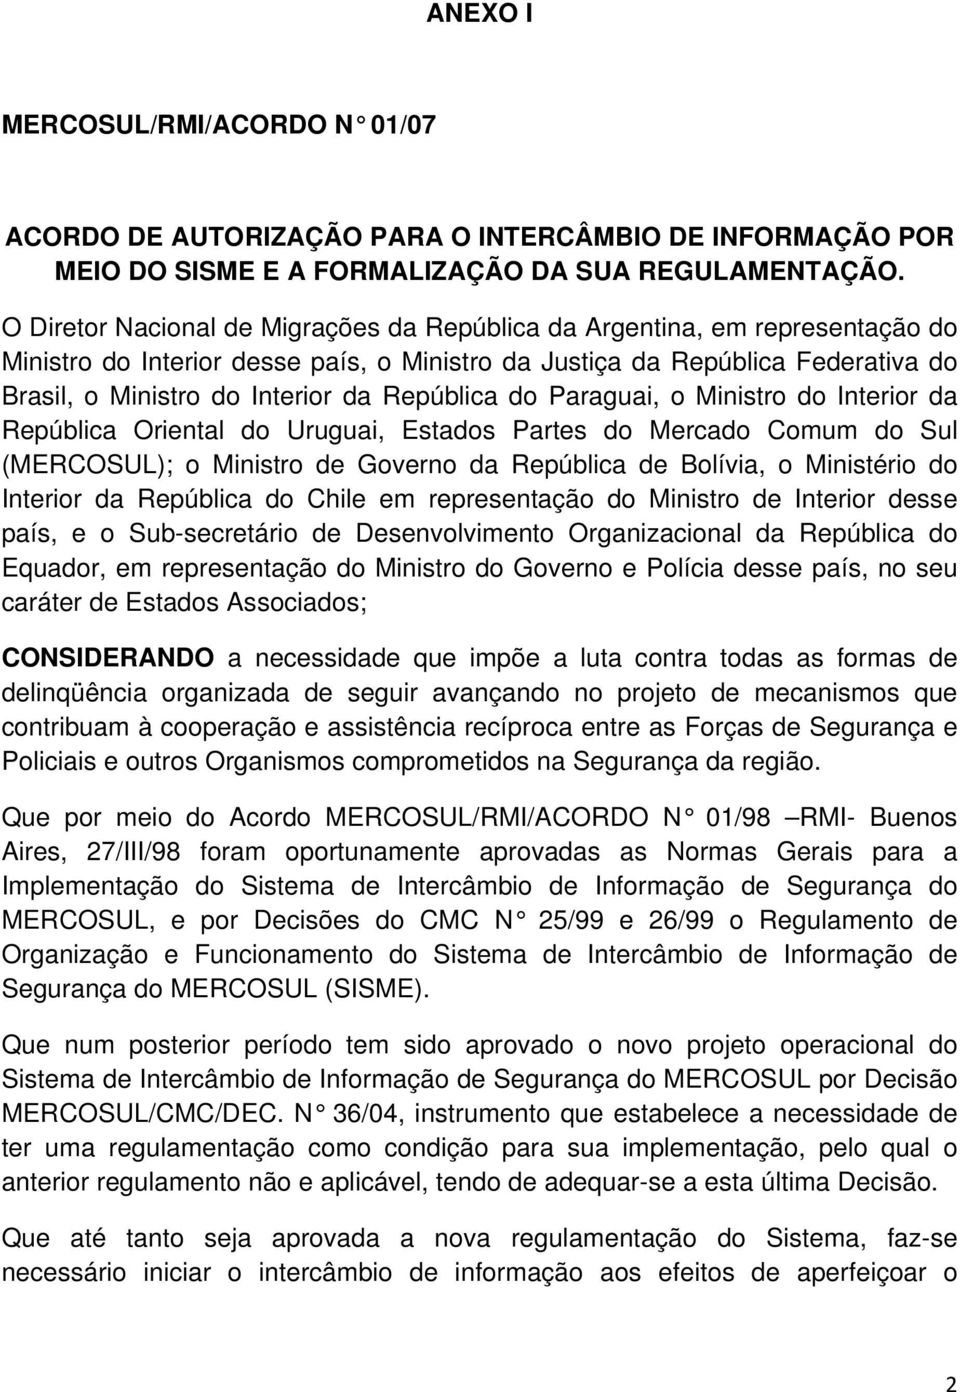 República do Paraguai, o Ministro do Interior da República Oriental do Uruguai, Estados Partes do Mercado Comum do Sul (MERCOSUL); o Ministro de Governo da República de Bolívia, o Ministério do